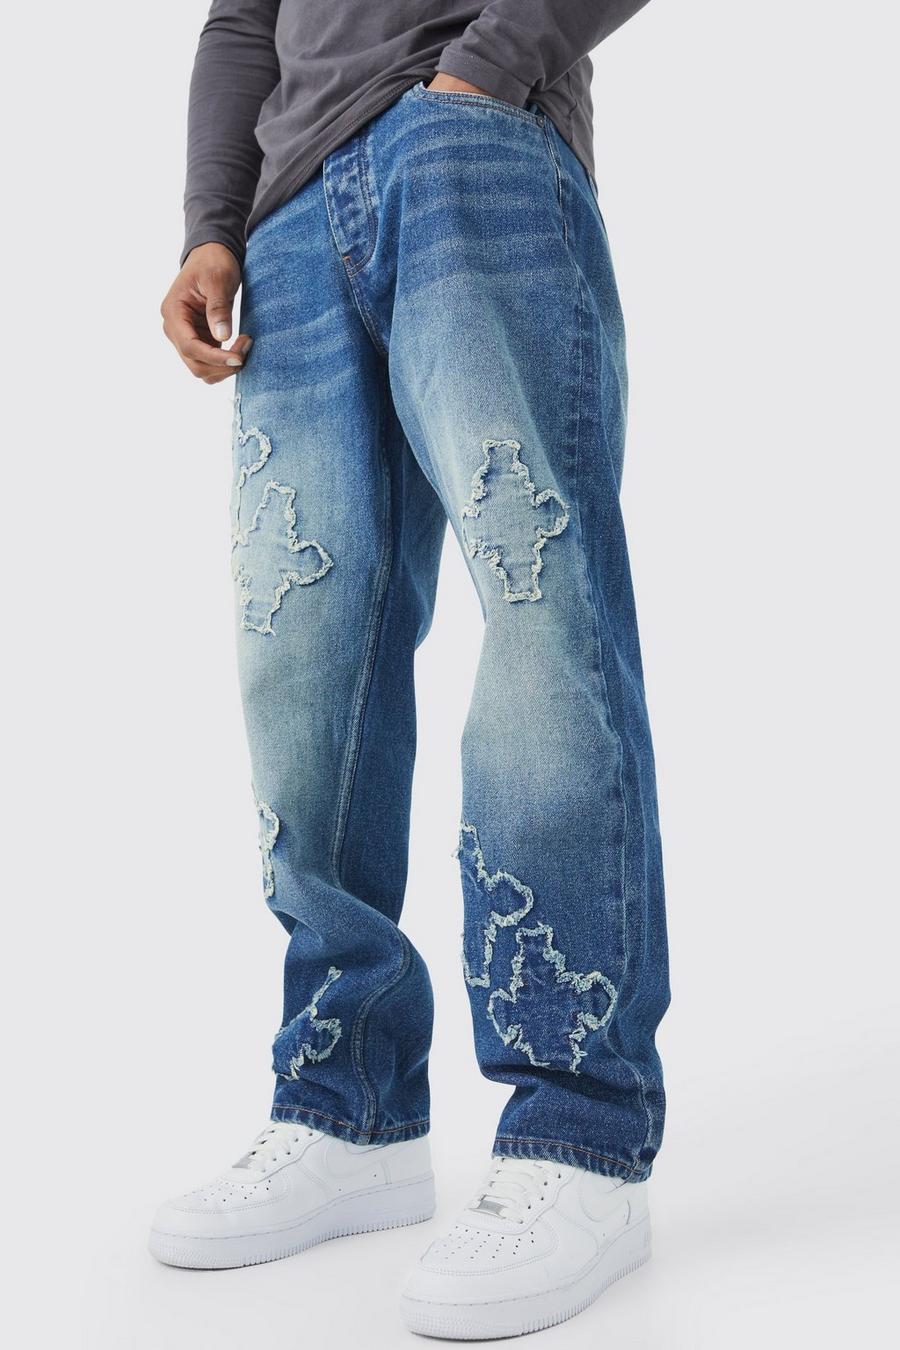 Men's Loose Fit Jeans, Men's Skater Jeans